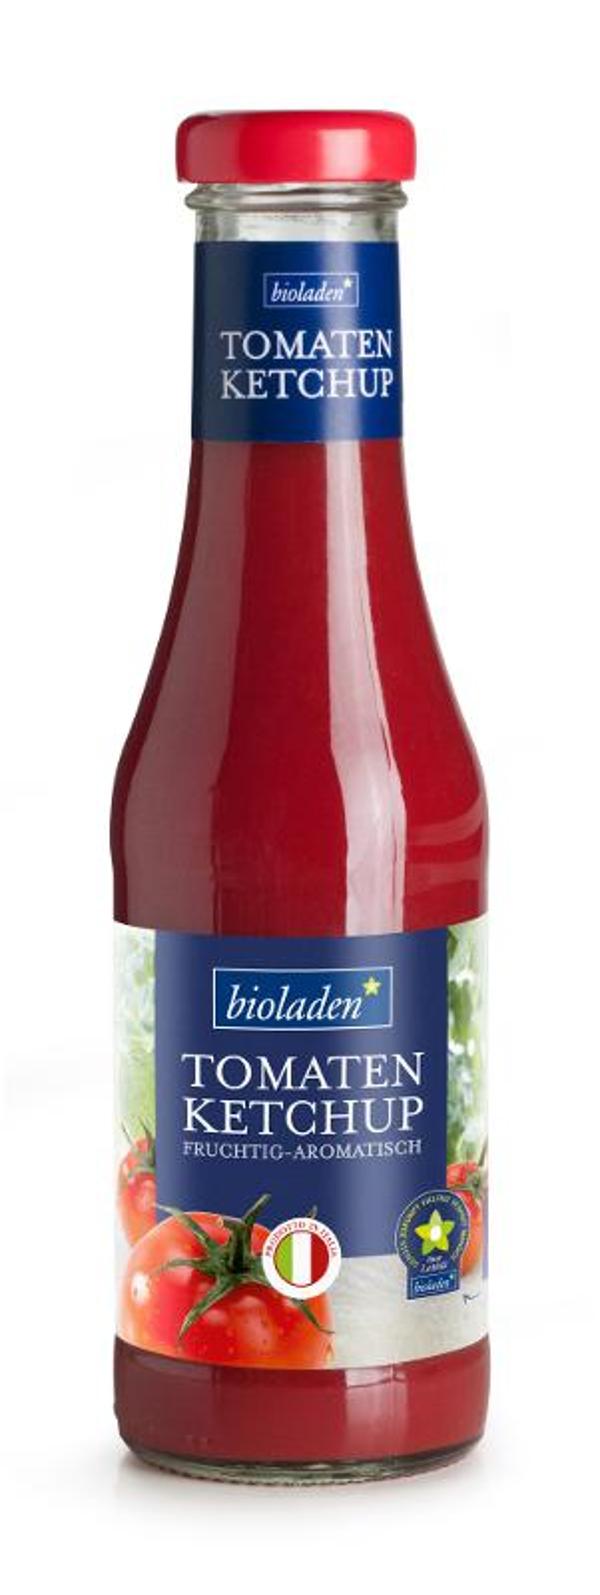 Produktfoto zu Bioladen Tomatenketchup - 450ml